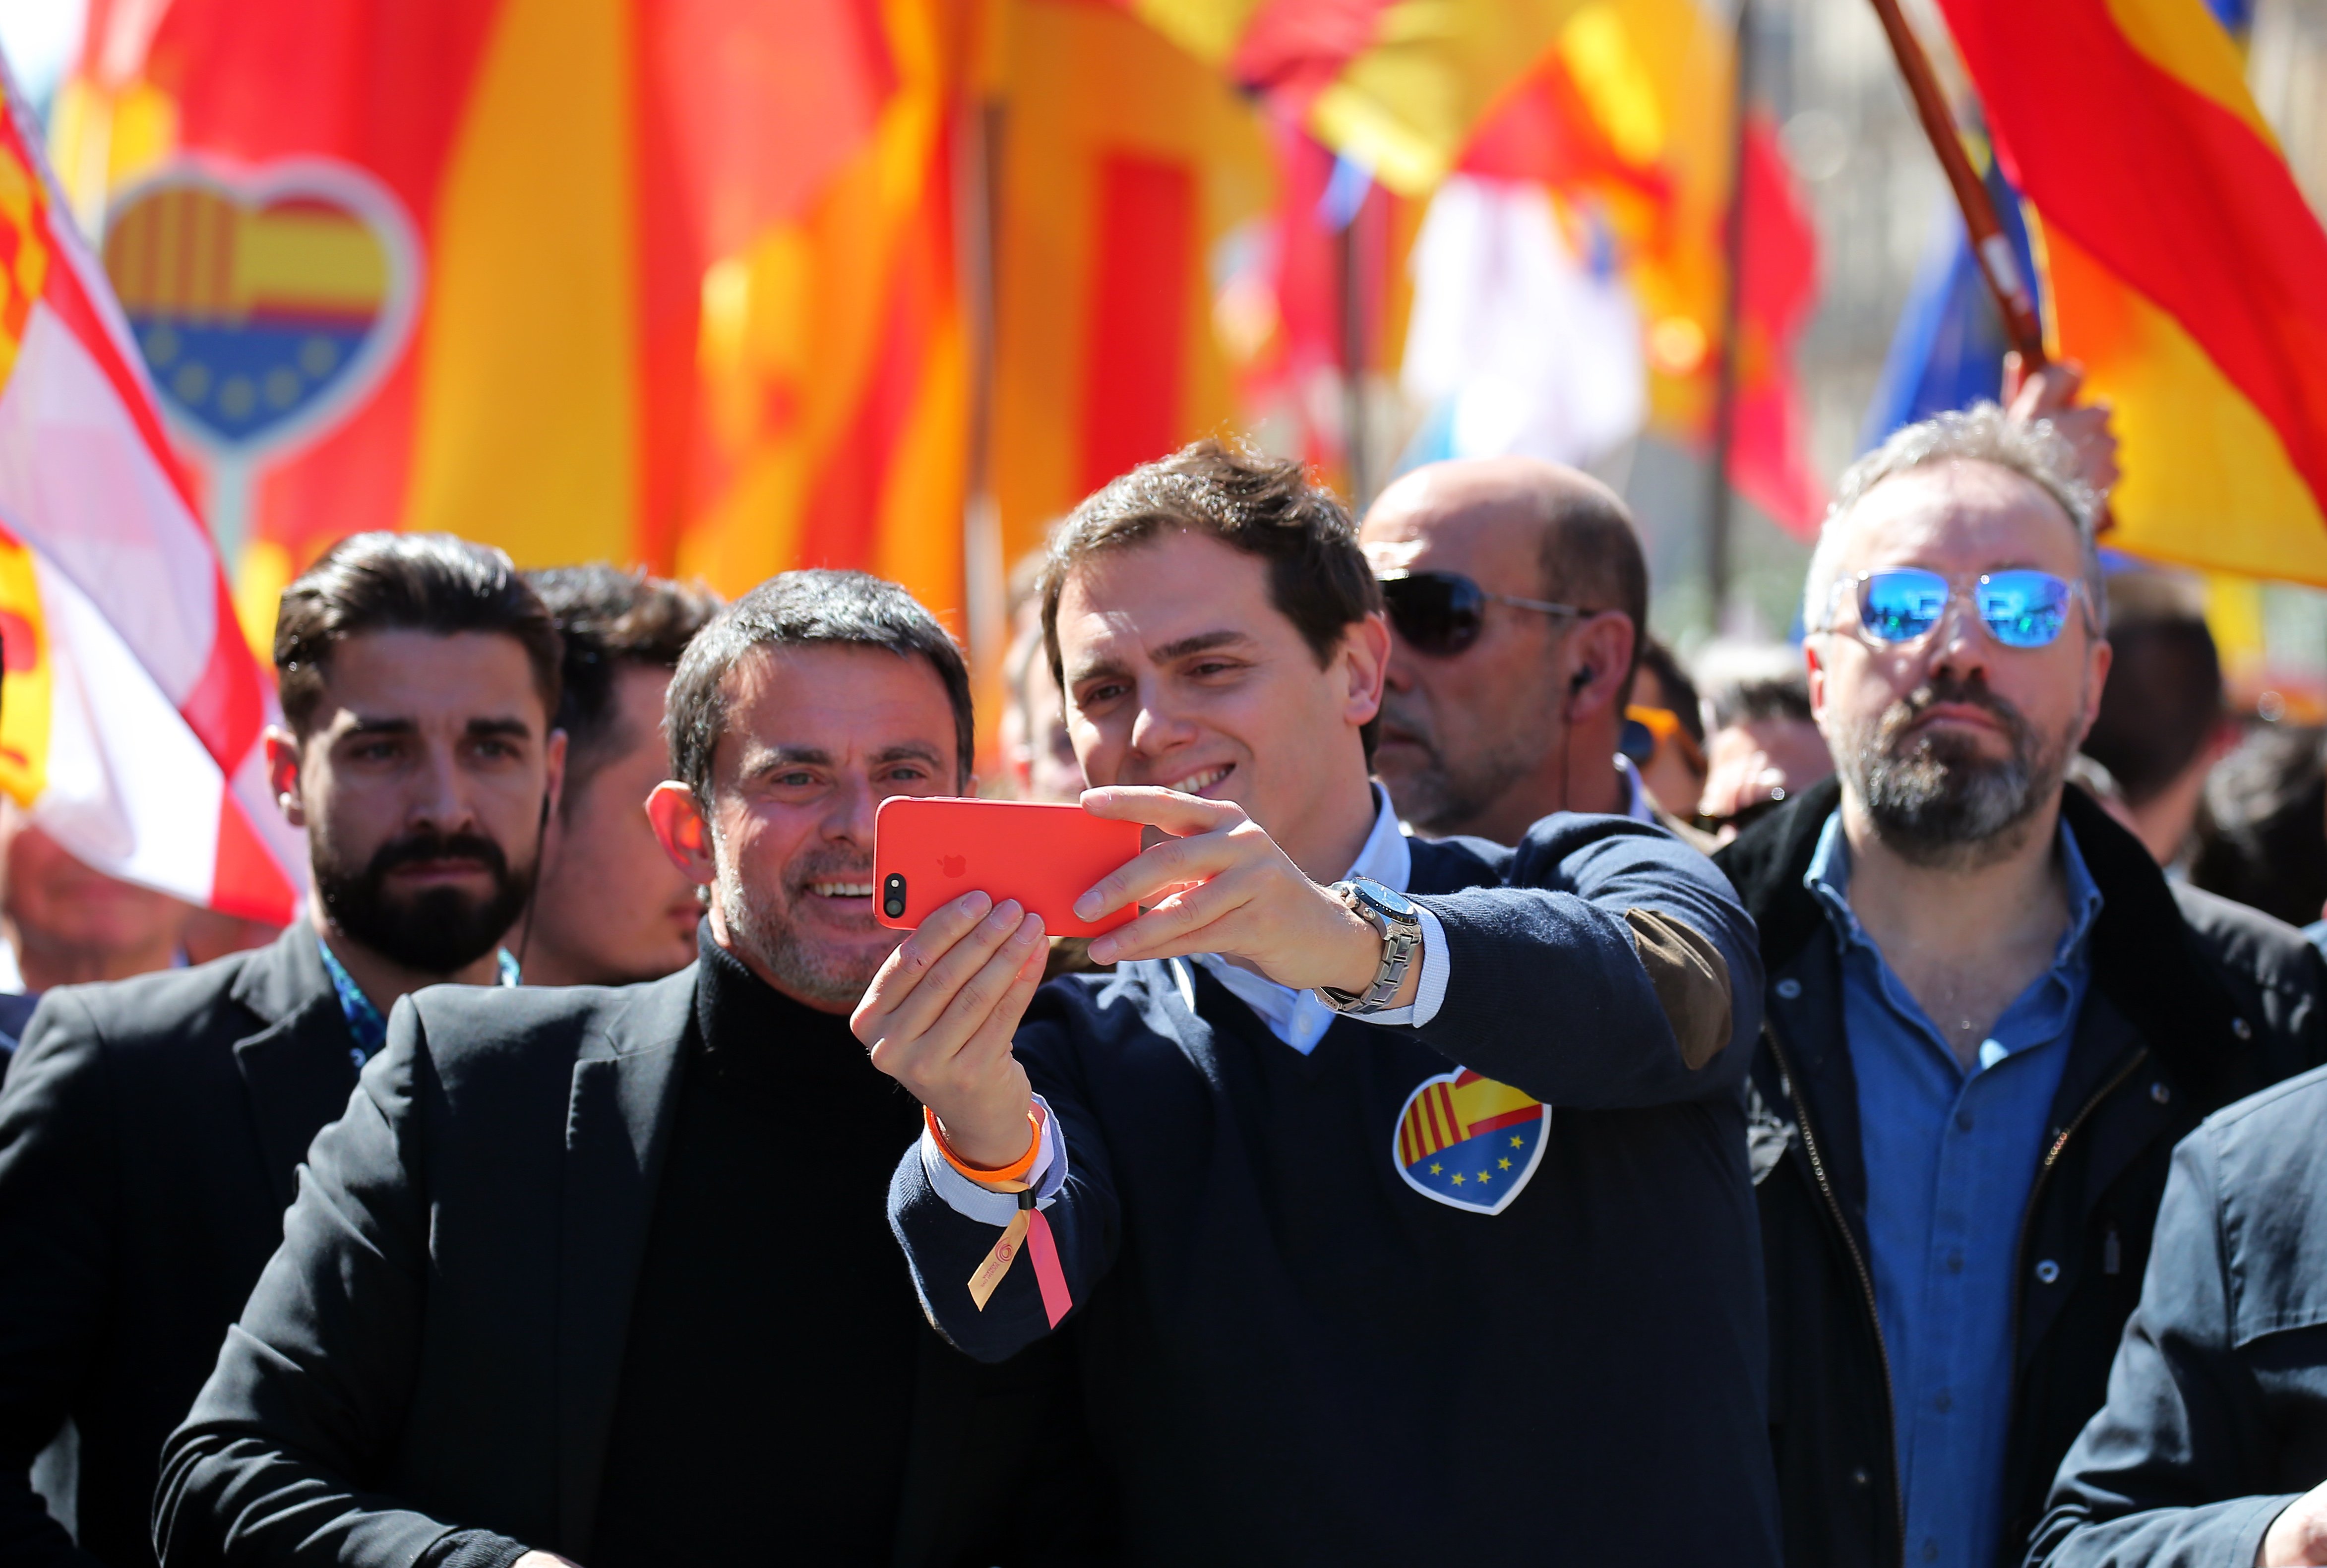 La prensa francesa hurga en la burguesa catalana que sale con Manuel Valls